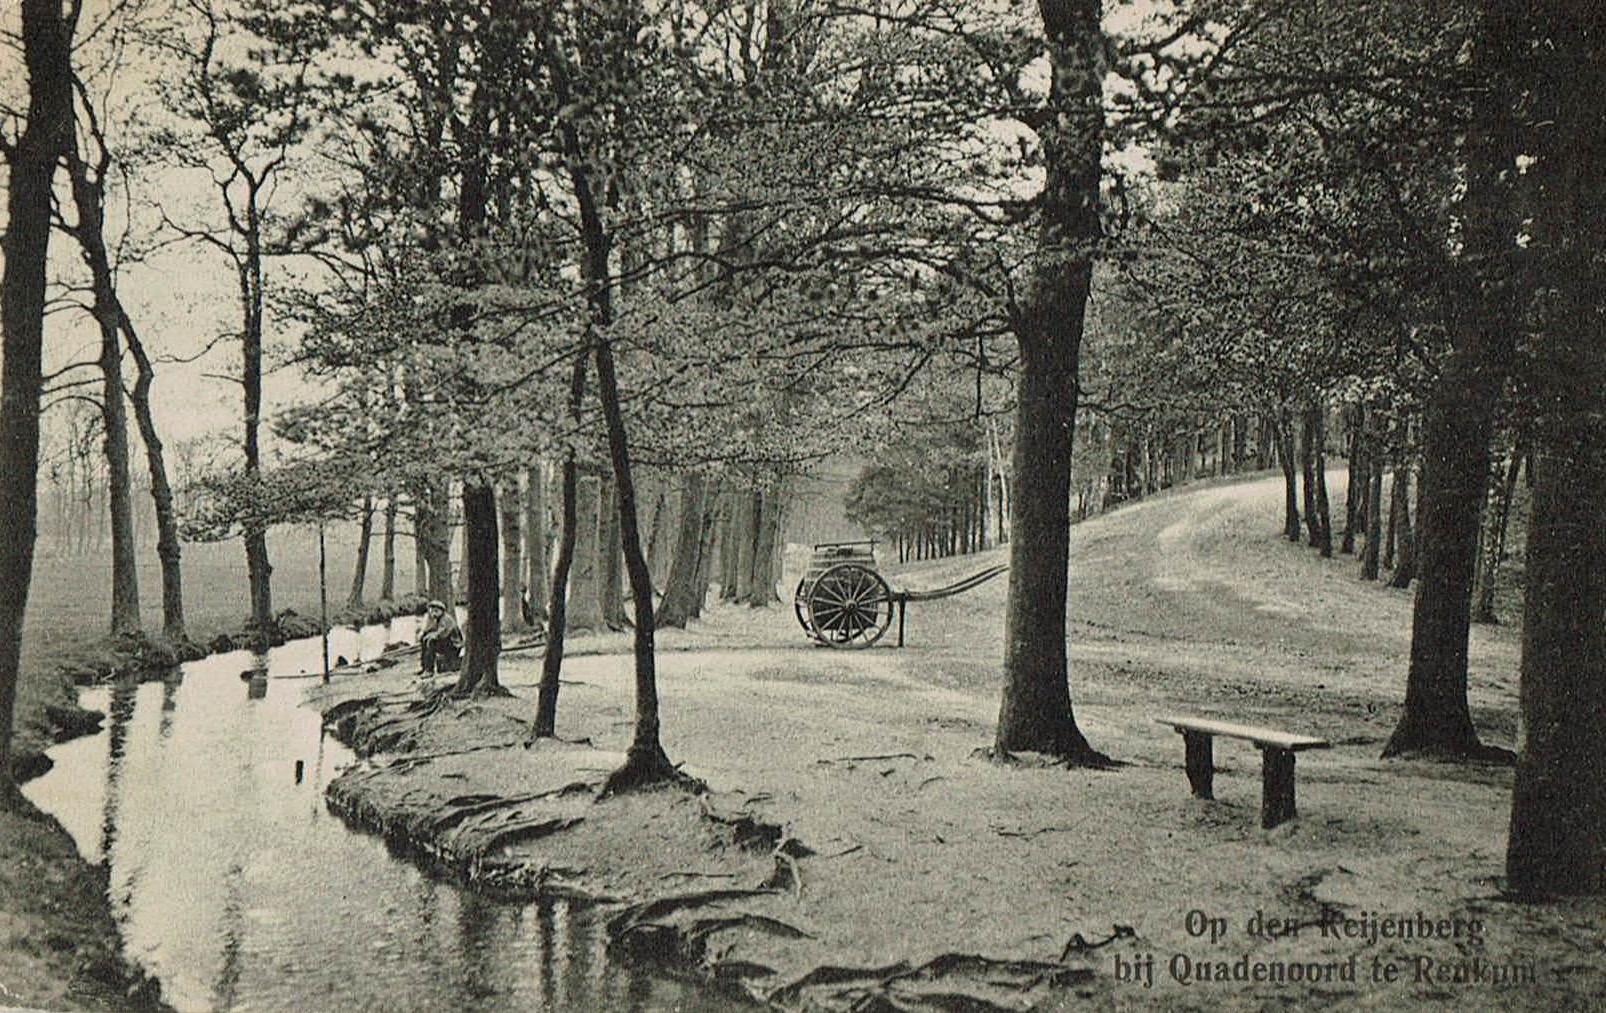 Nr 31 Keijenberg 1912